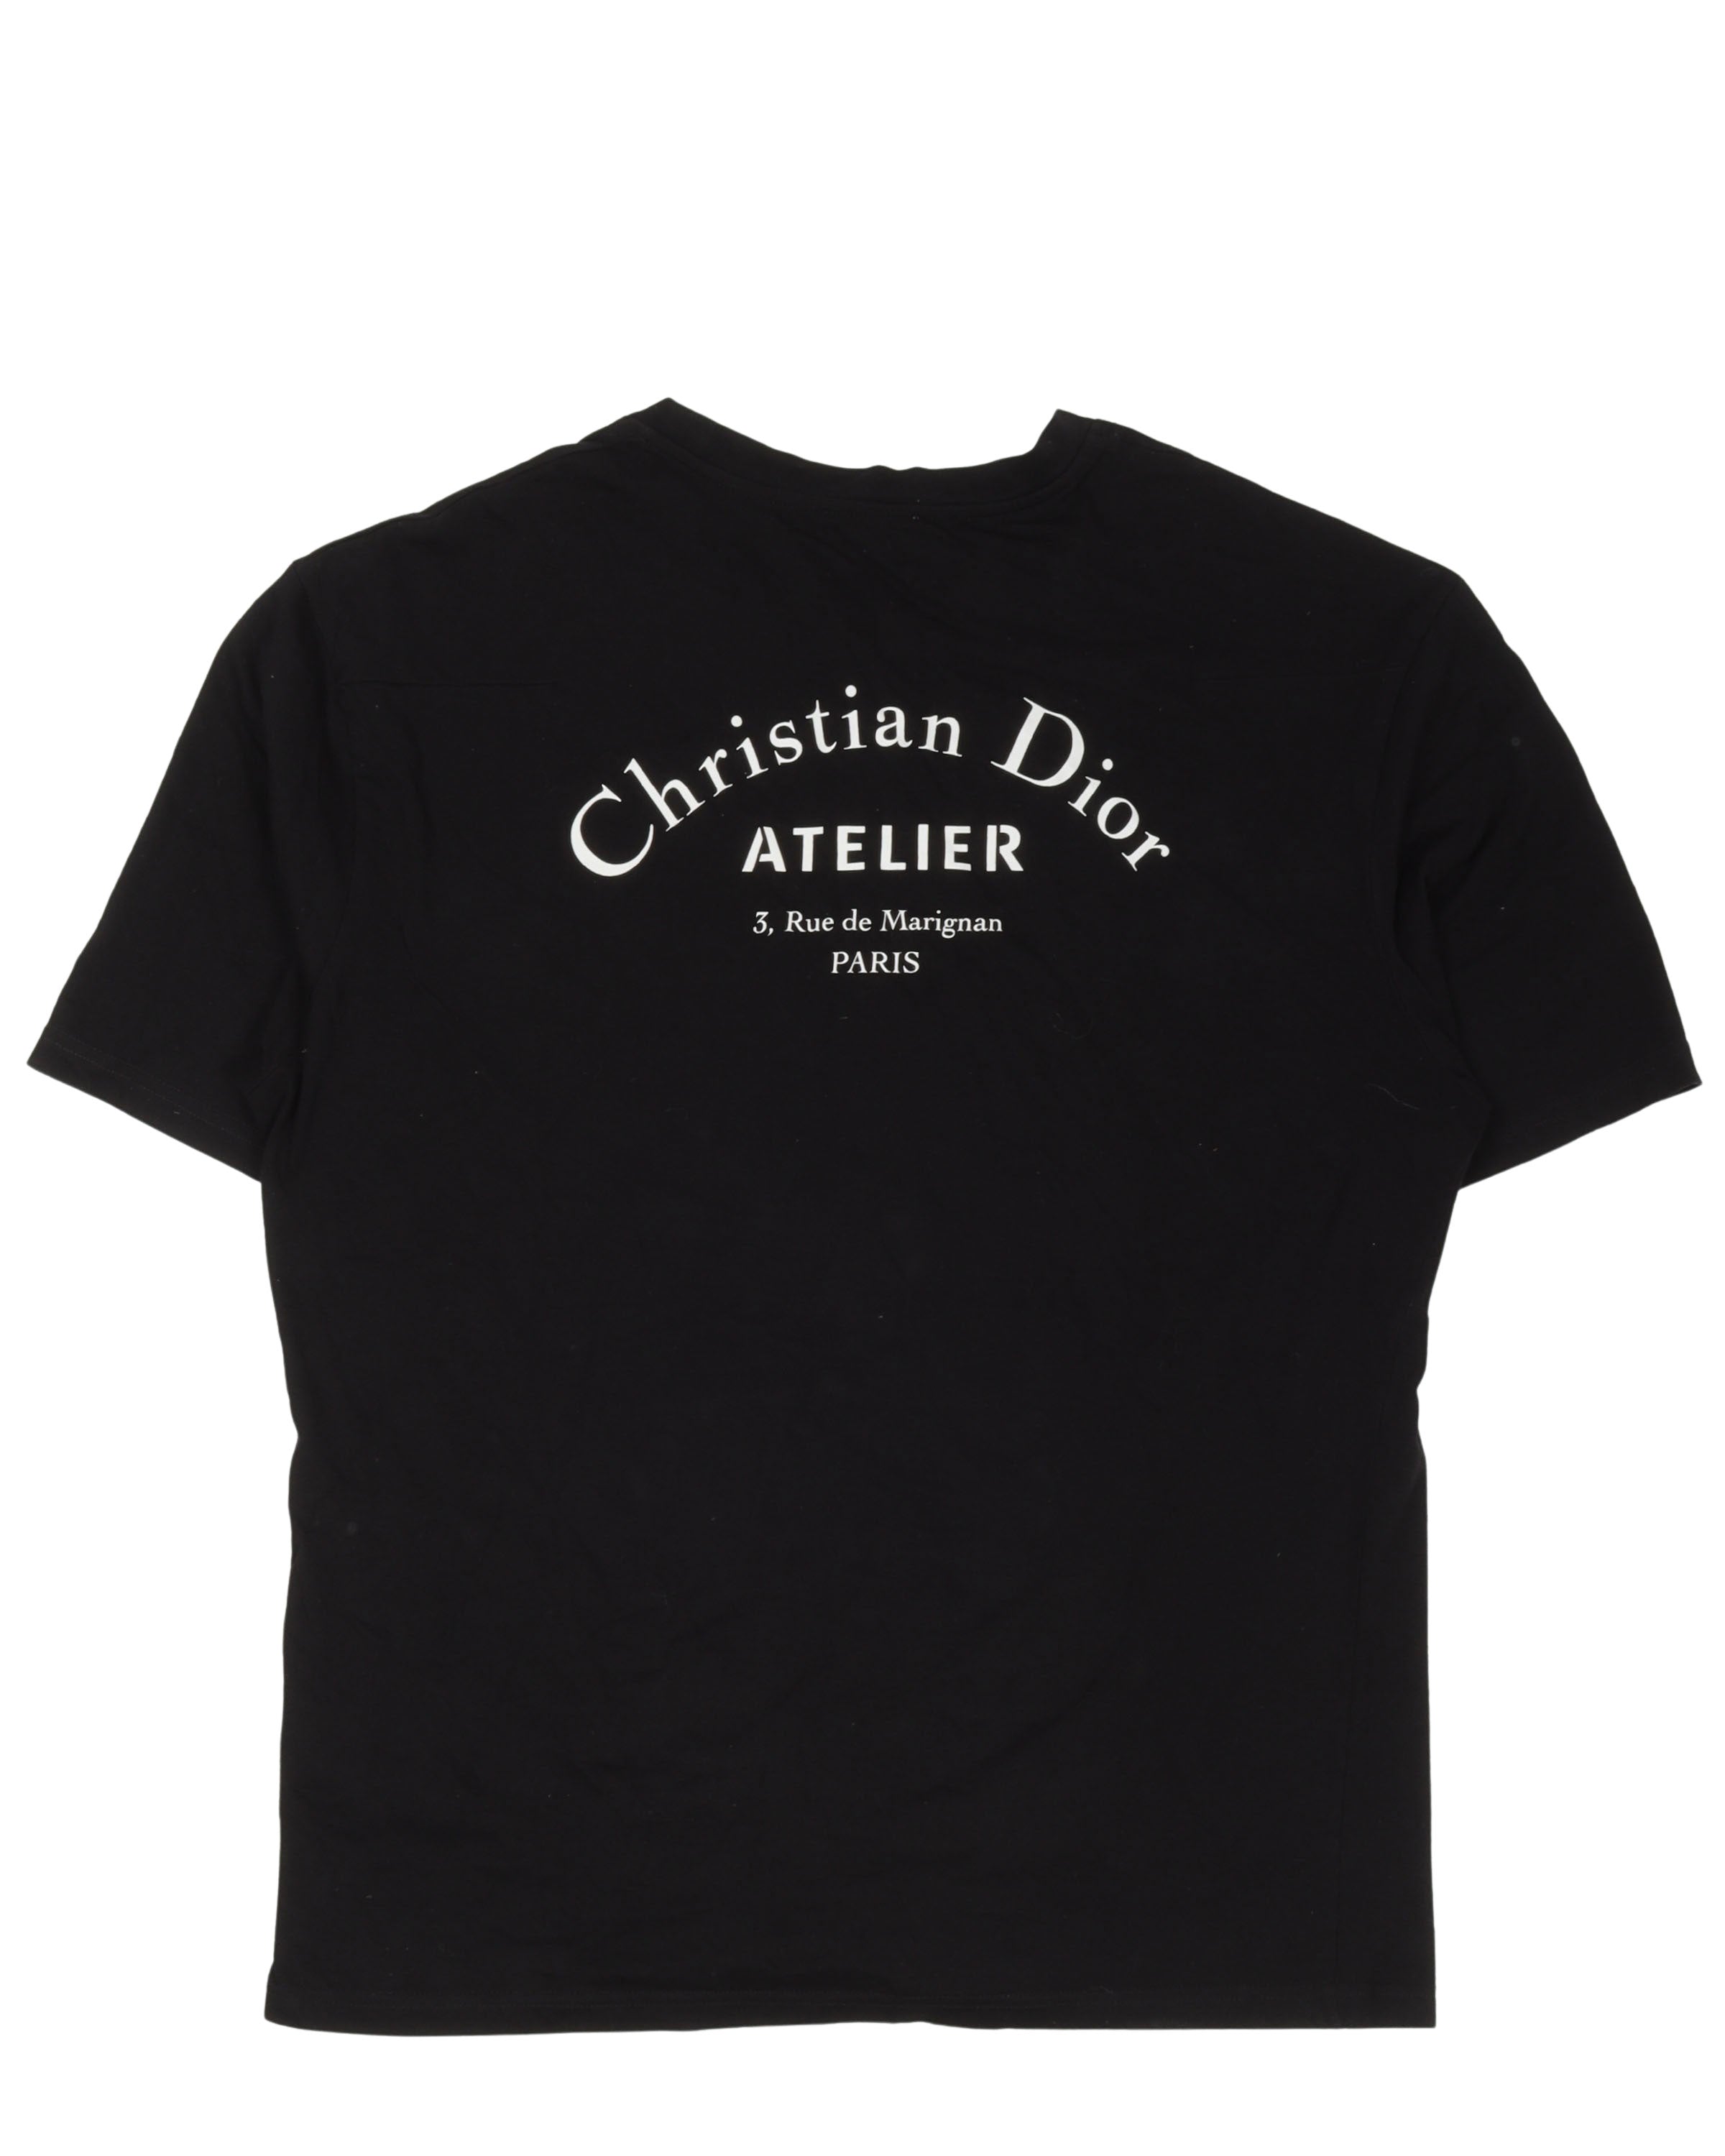 Tshirt Christian Dior trắng nhiều chữ  TheLuxe